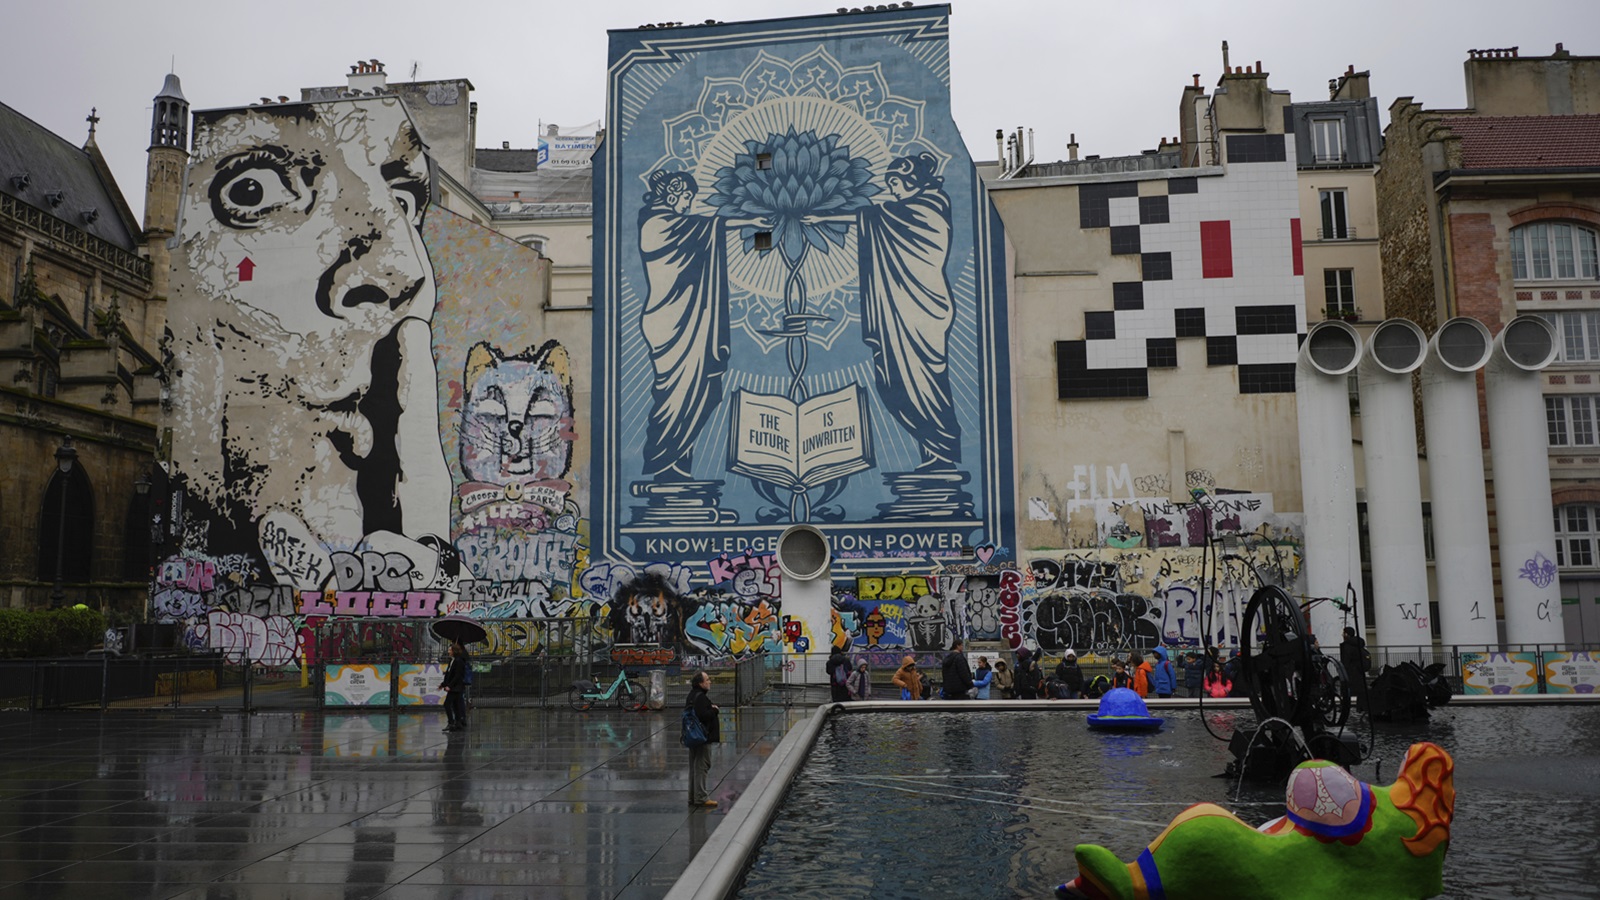 "الغازي": فنان غامض يرسم "سبايس انفيدرز" في أرجاء باريس